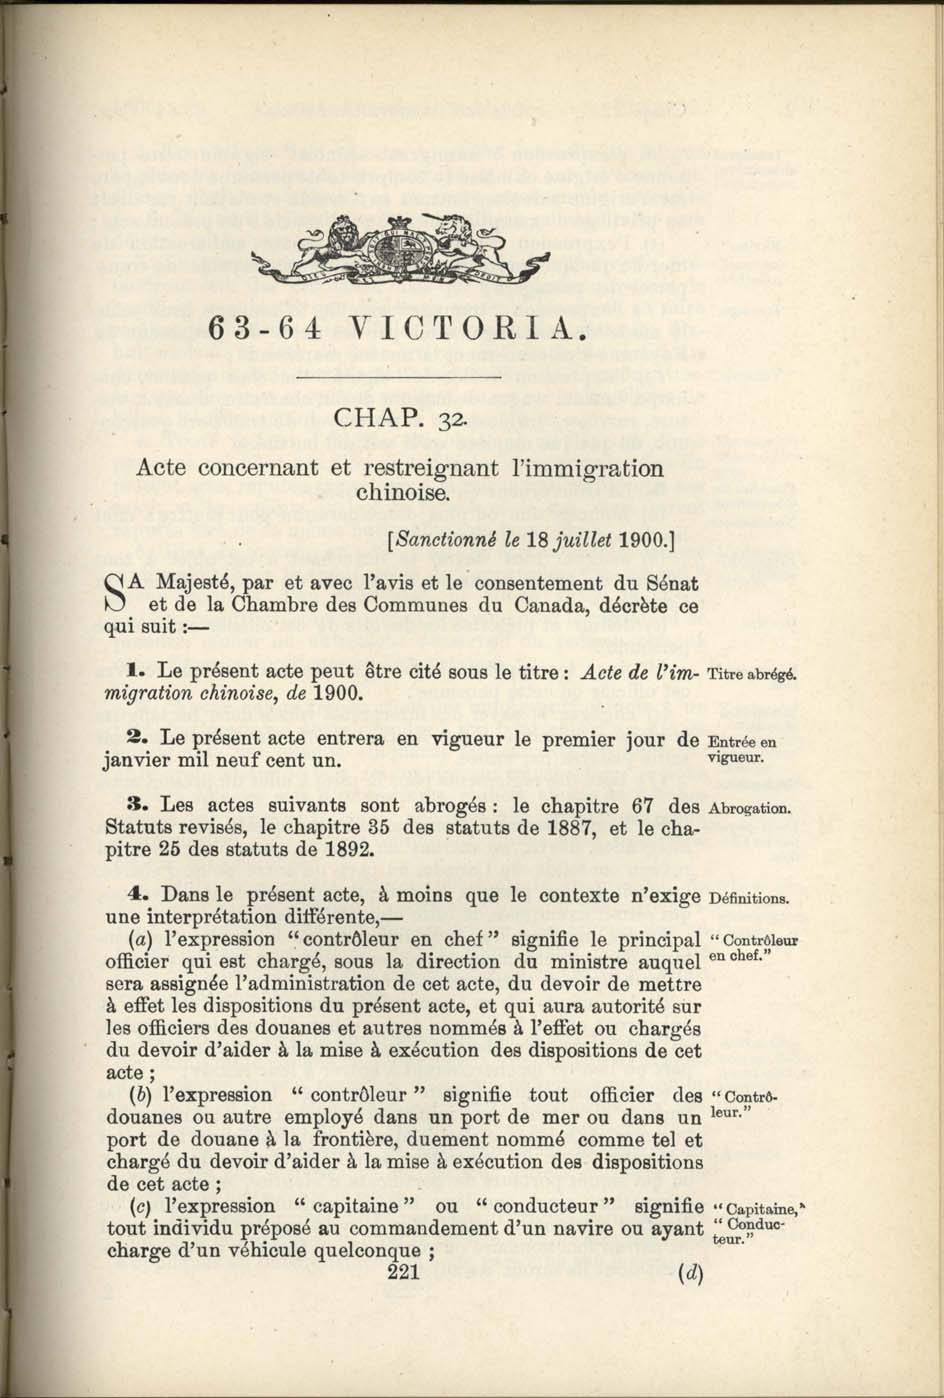 Chap. 35 Page 221 Acte de l’immigration chinoise, 1885 Amendement 1900